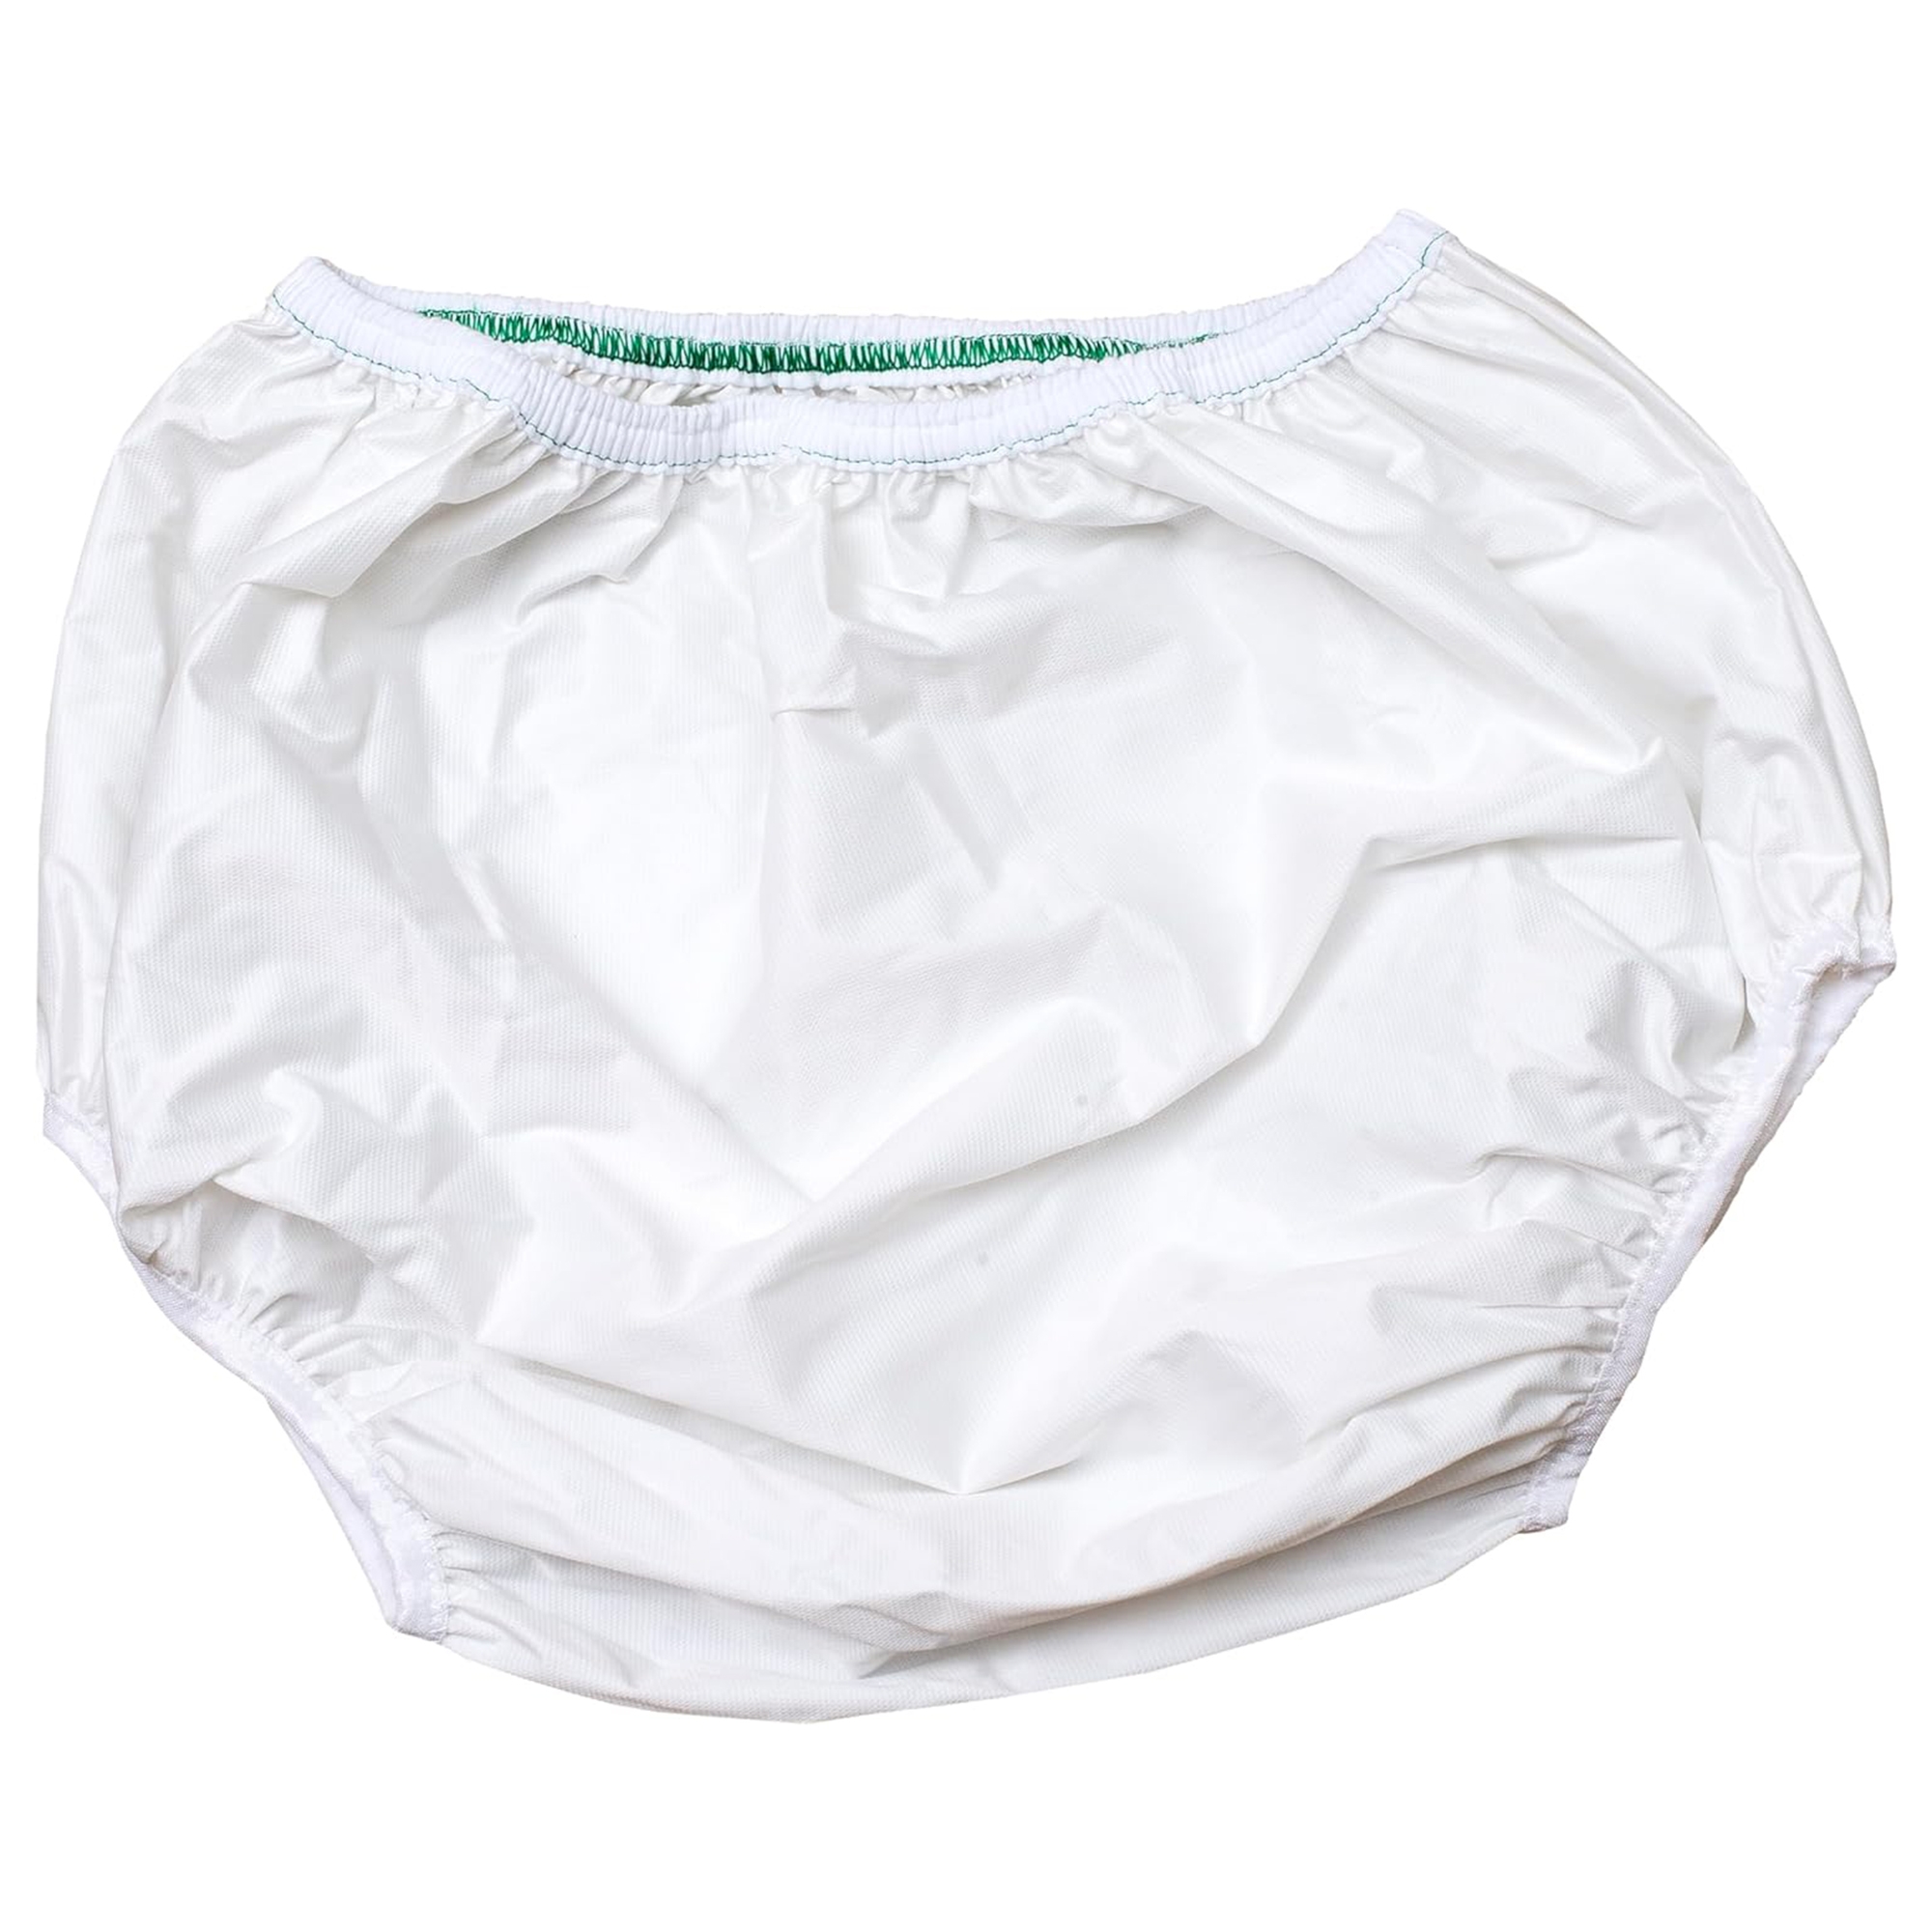 Quik-Sorb Reusable Vinyl Protective Underwear